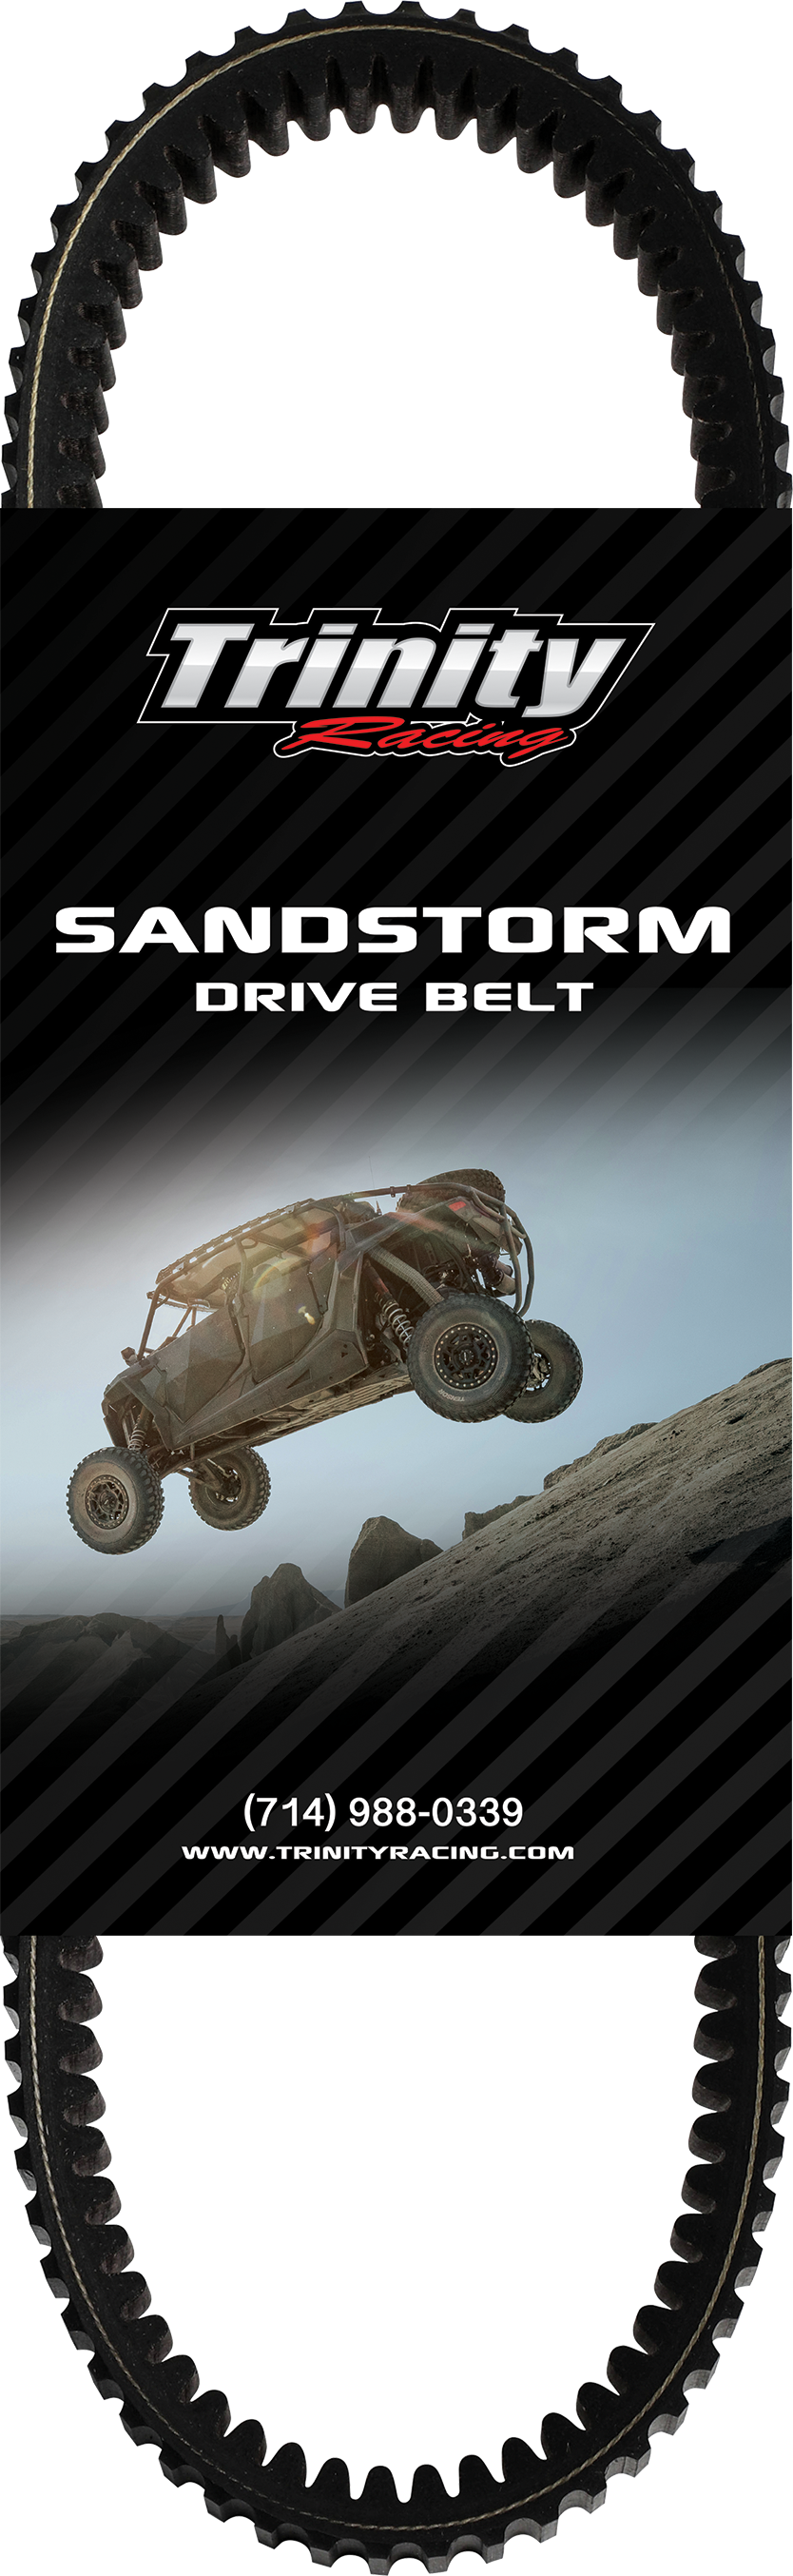 Sandstorm Drive Belt - Wildcat XX/XTR1000